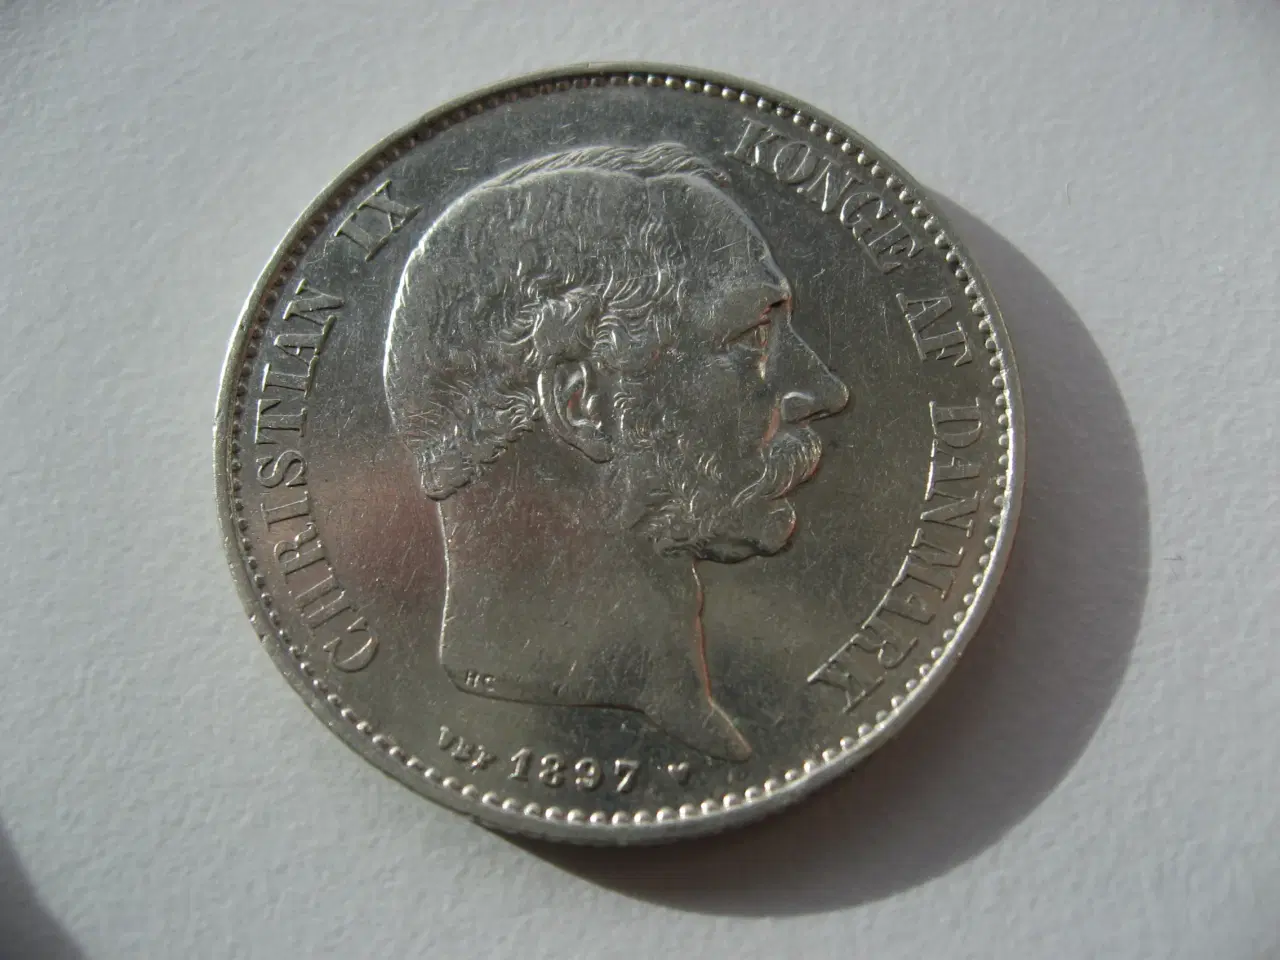 Billede 3 - Særdeles flot sølv 2 kr 1897, den bedste i serien